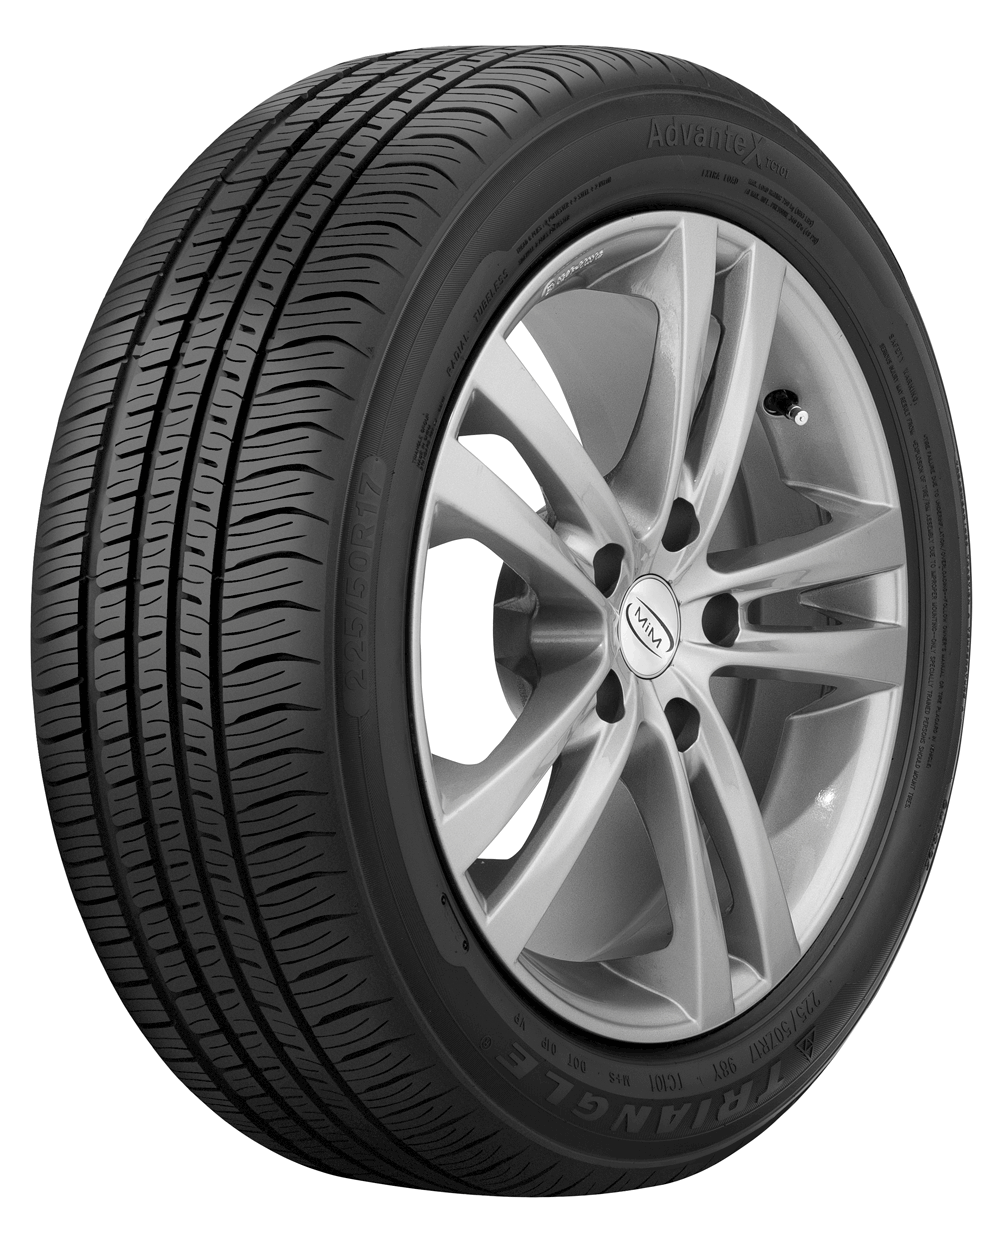 205/65R16 Triangle Advantex TC101 95H Tyre